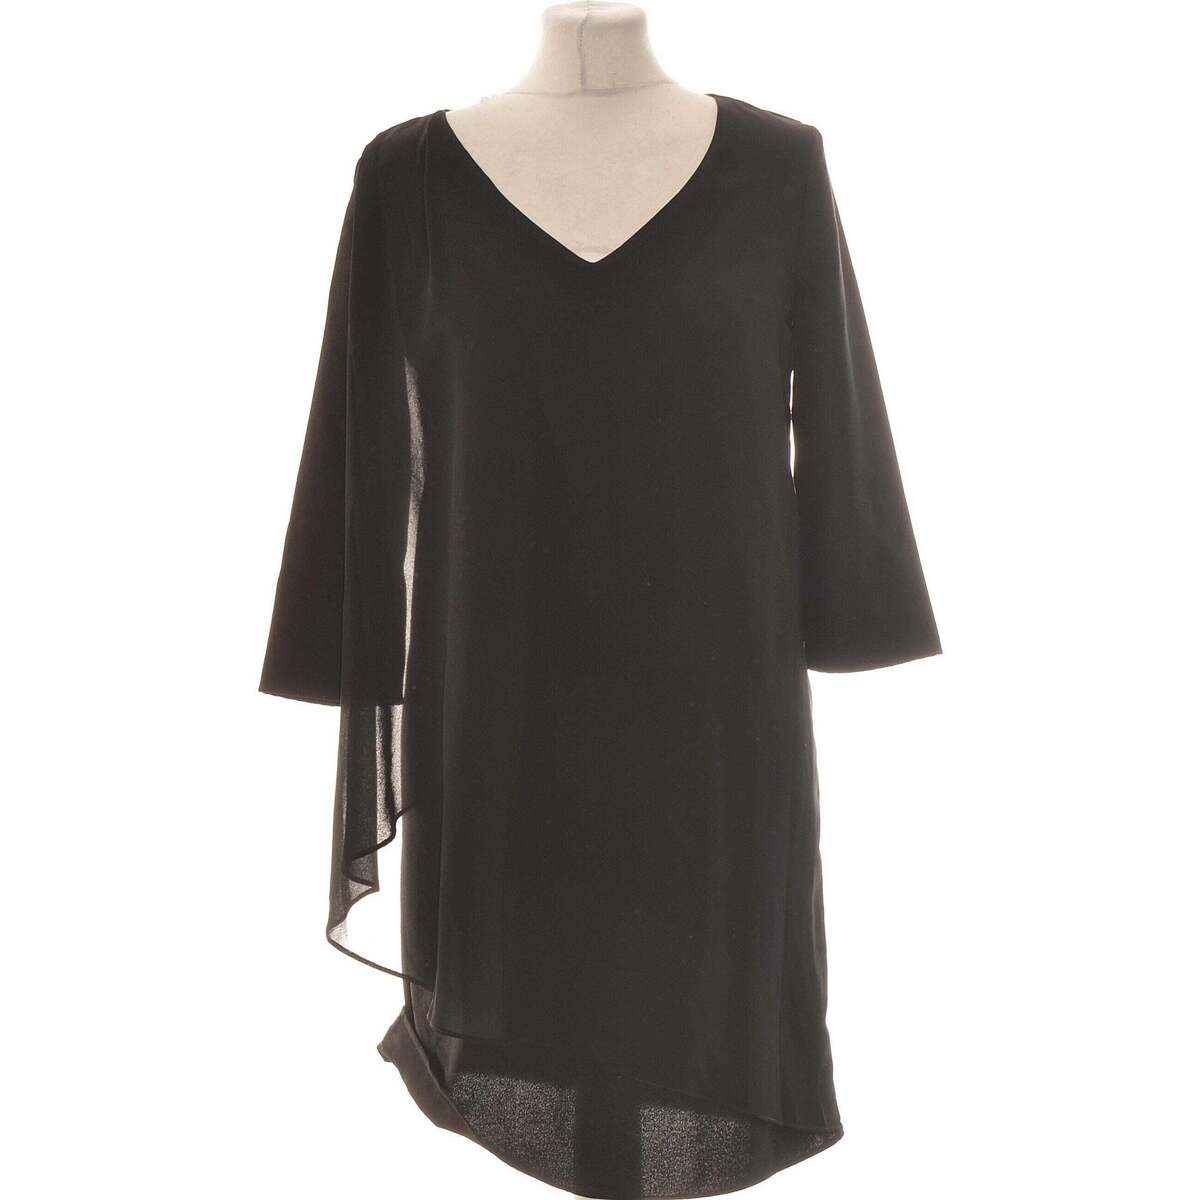 Vêtements Femme Robes courtes Naf Naf robe courte  36 - T1 - S Noir Noir